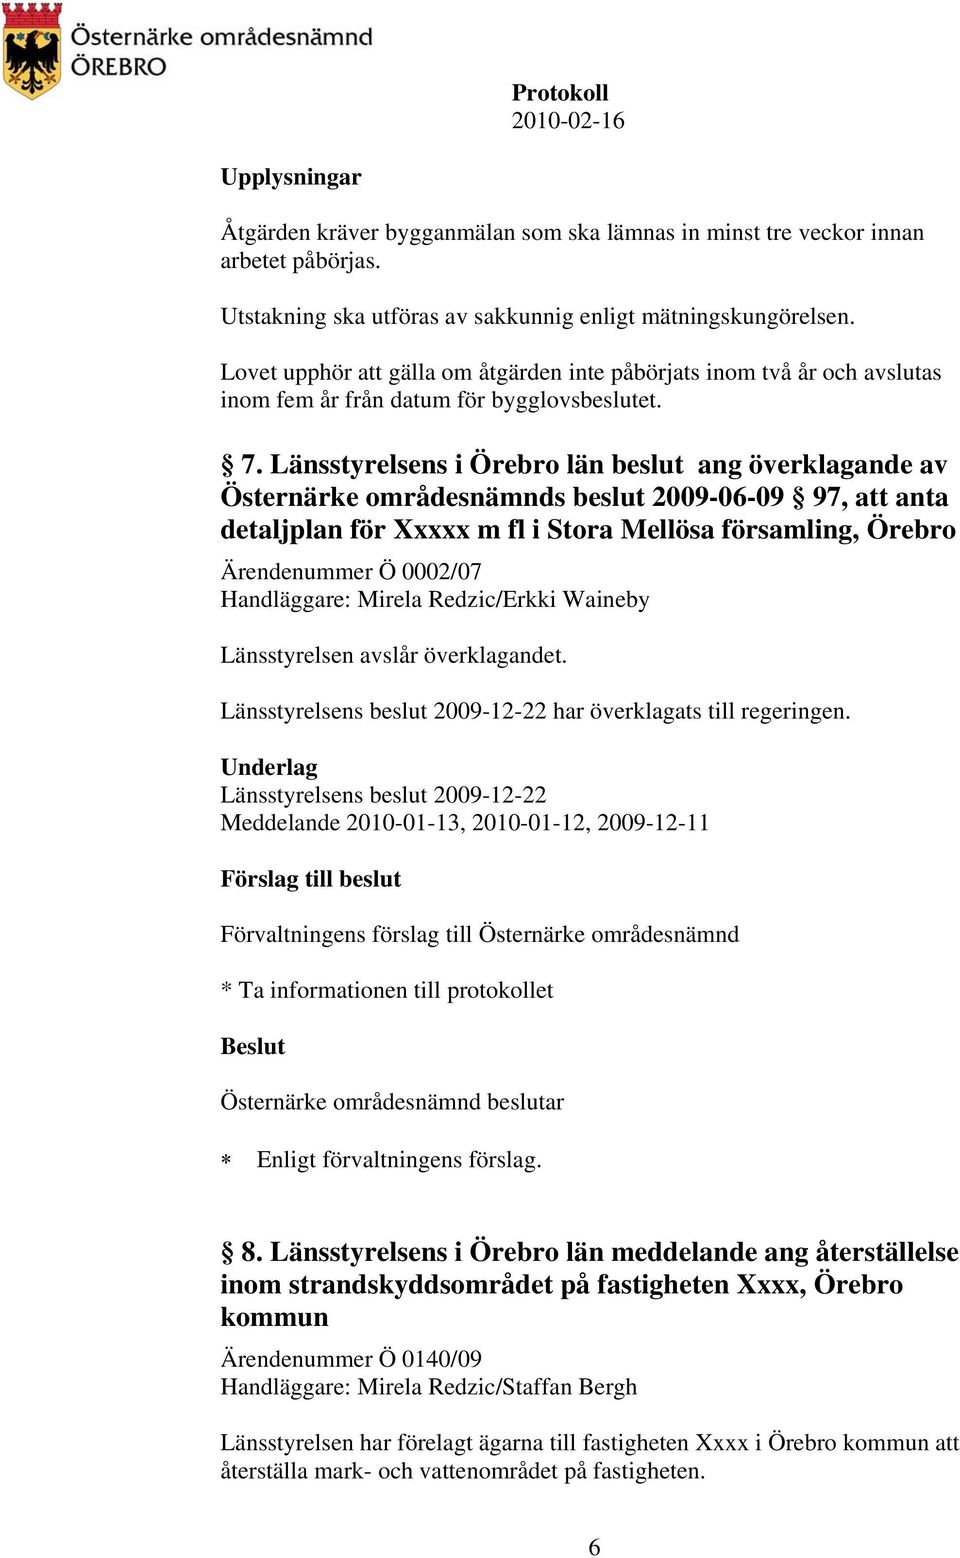 Länsstyrelsens i Örebro län beslut ang överklagande av Östernärke områdesnämnds beslut 2009-06-09 97, att anta detaljplan för Xxxxx m fl i Stora Mellösa församling, Örebro Ärendenummer Ö 0002/07